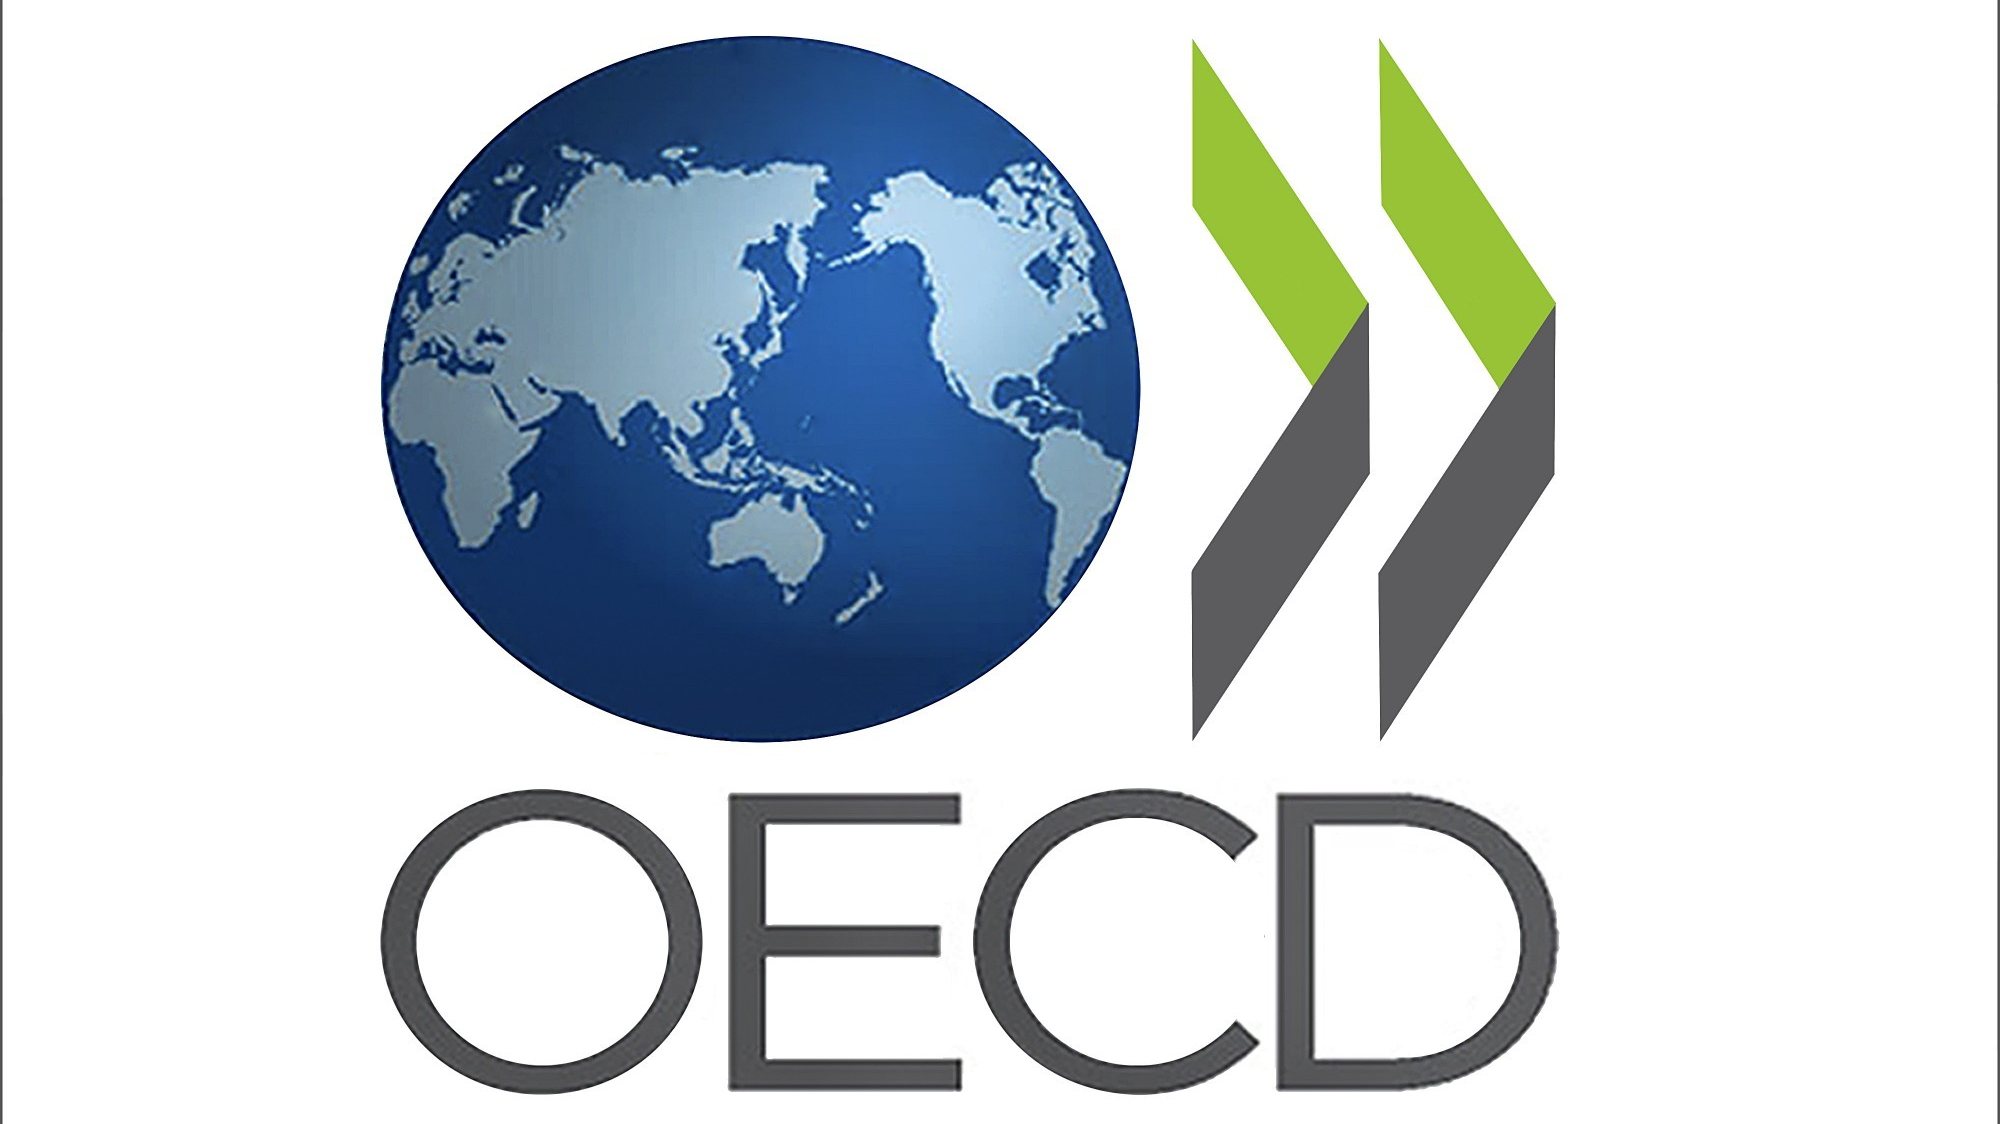 O Conselho anunciou ainda que vai ser reforçado o apoio da OCDE ao governo da Ucrânia e reiterou a solidariedade com o povo ucraniano